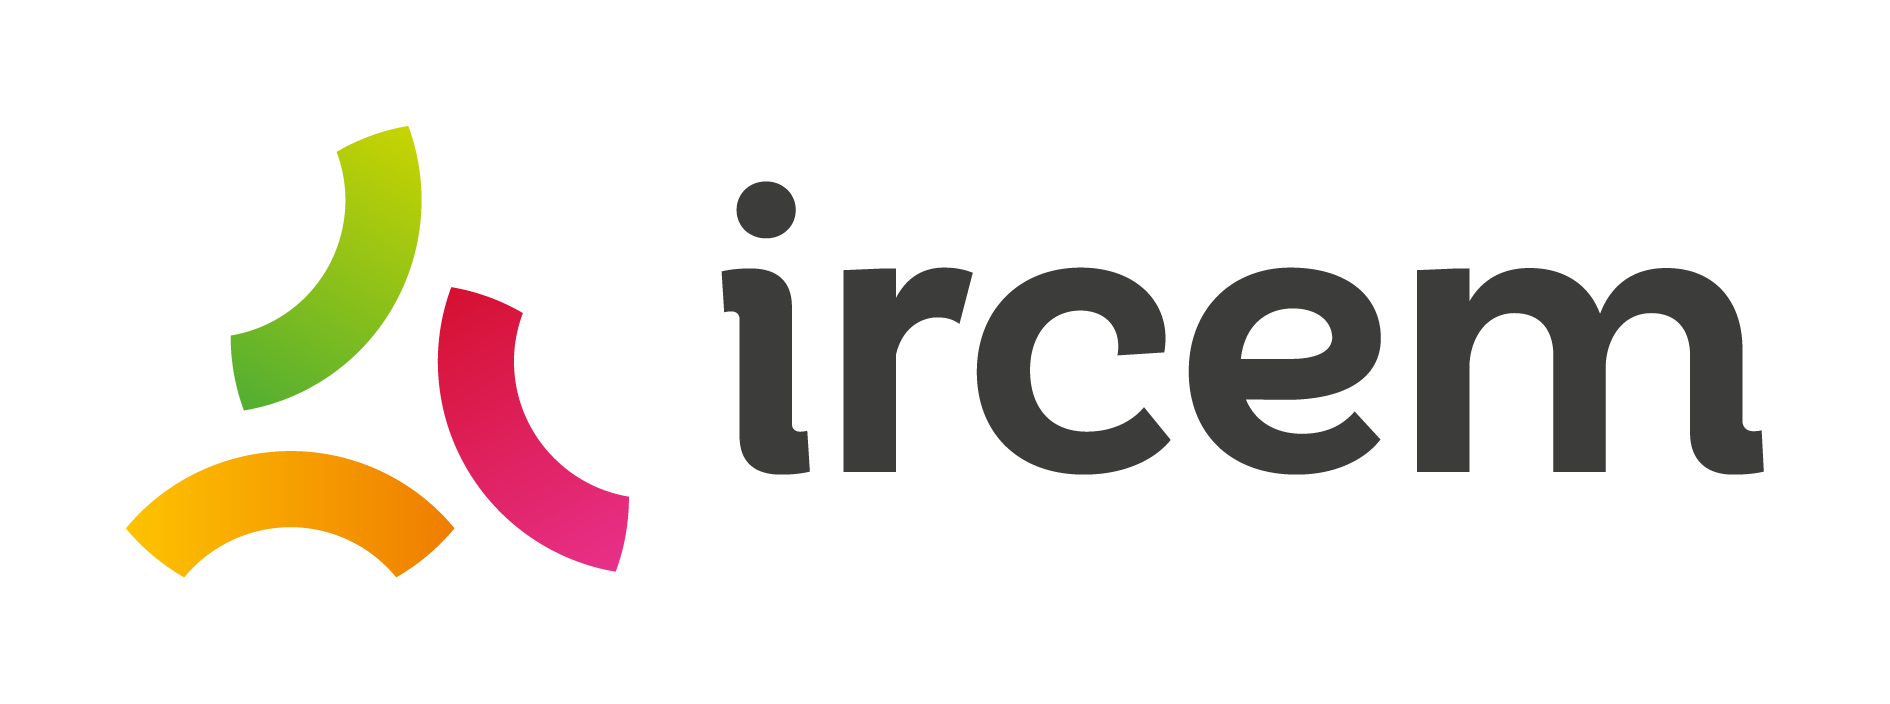 Logo de l'icerm